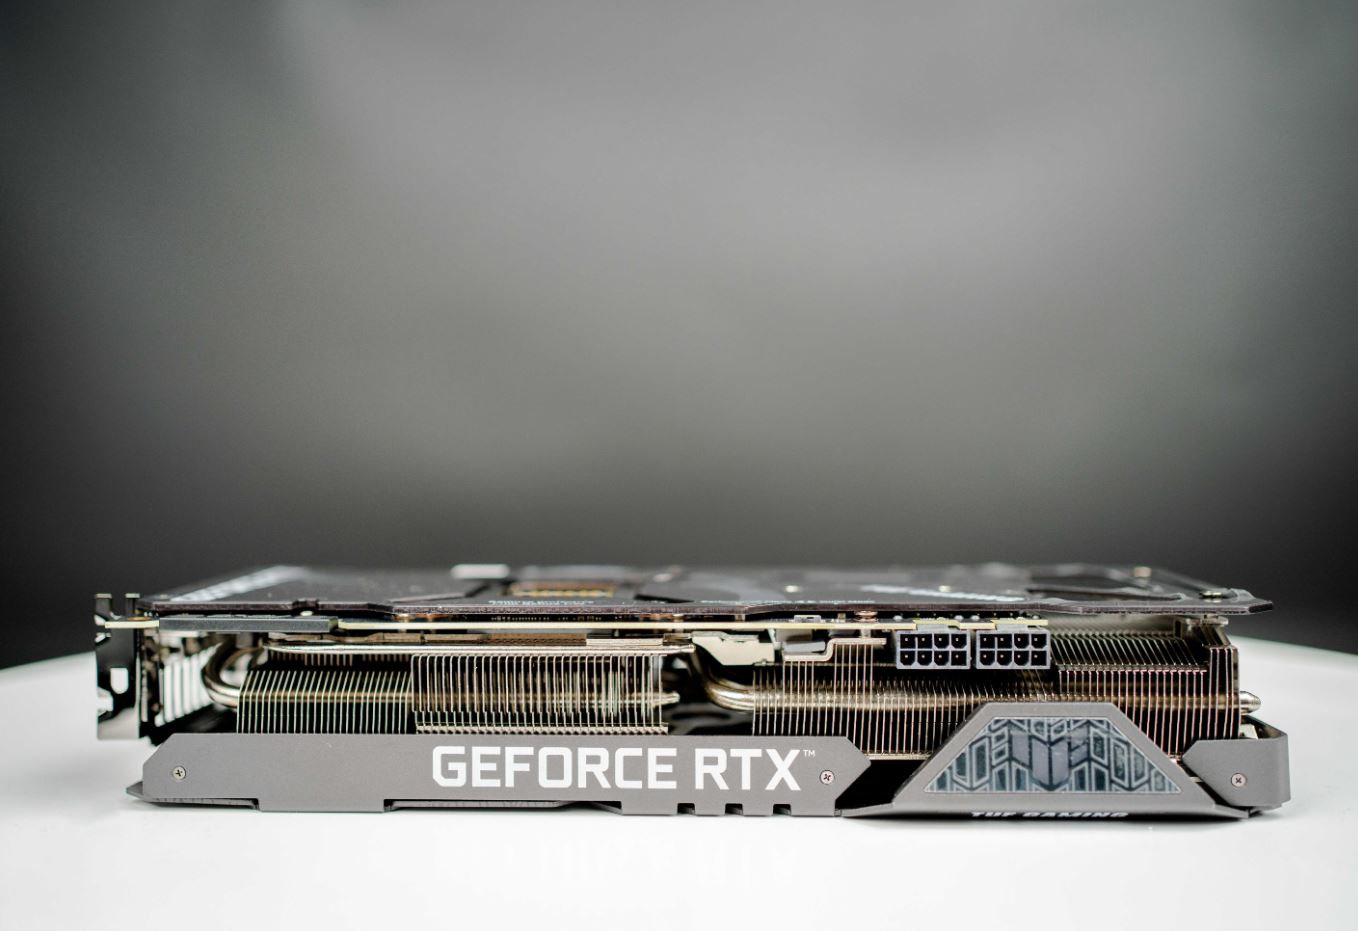 Mặt cạnh ngoài của TUF RTX 3090 có để thương hiệu Geforce RTX